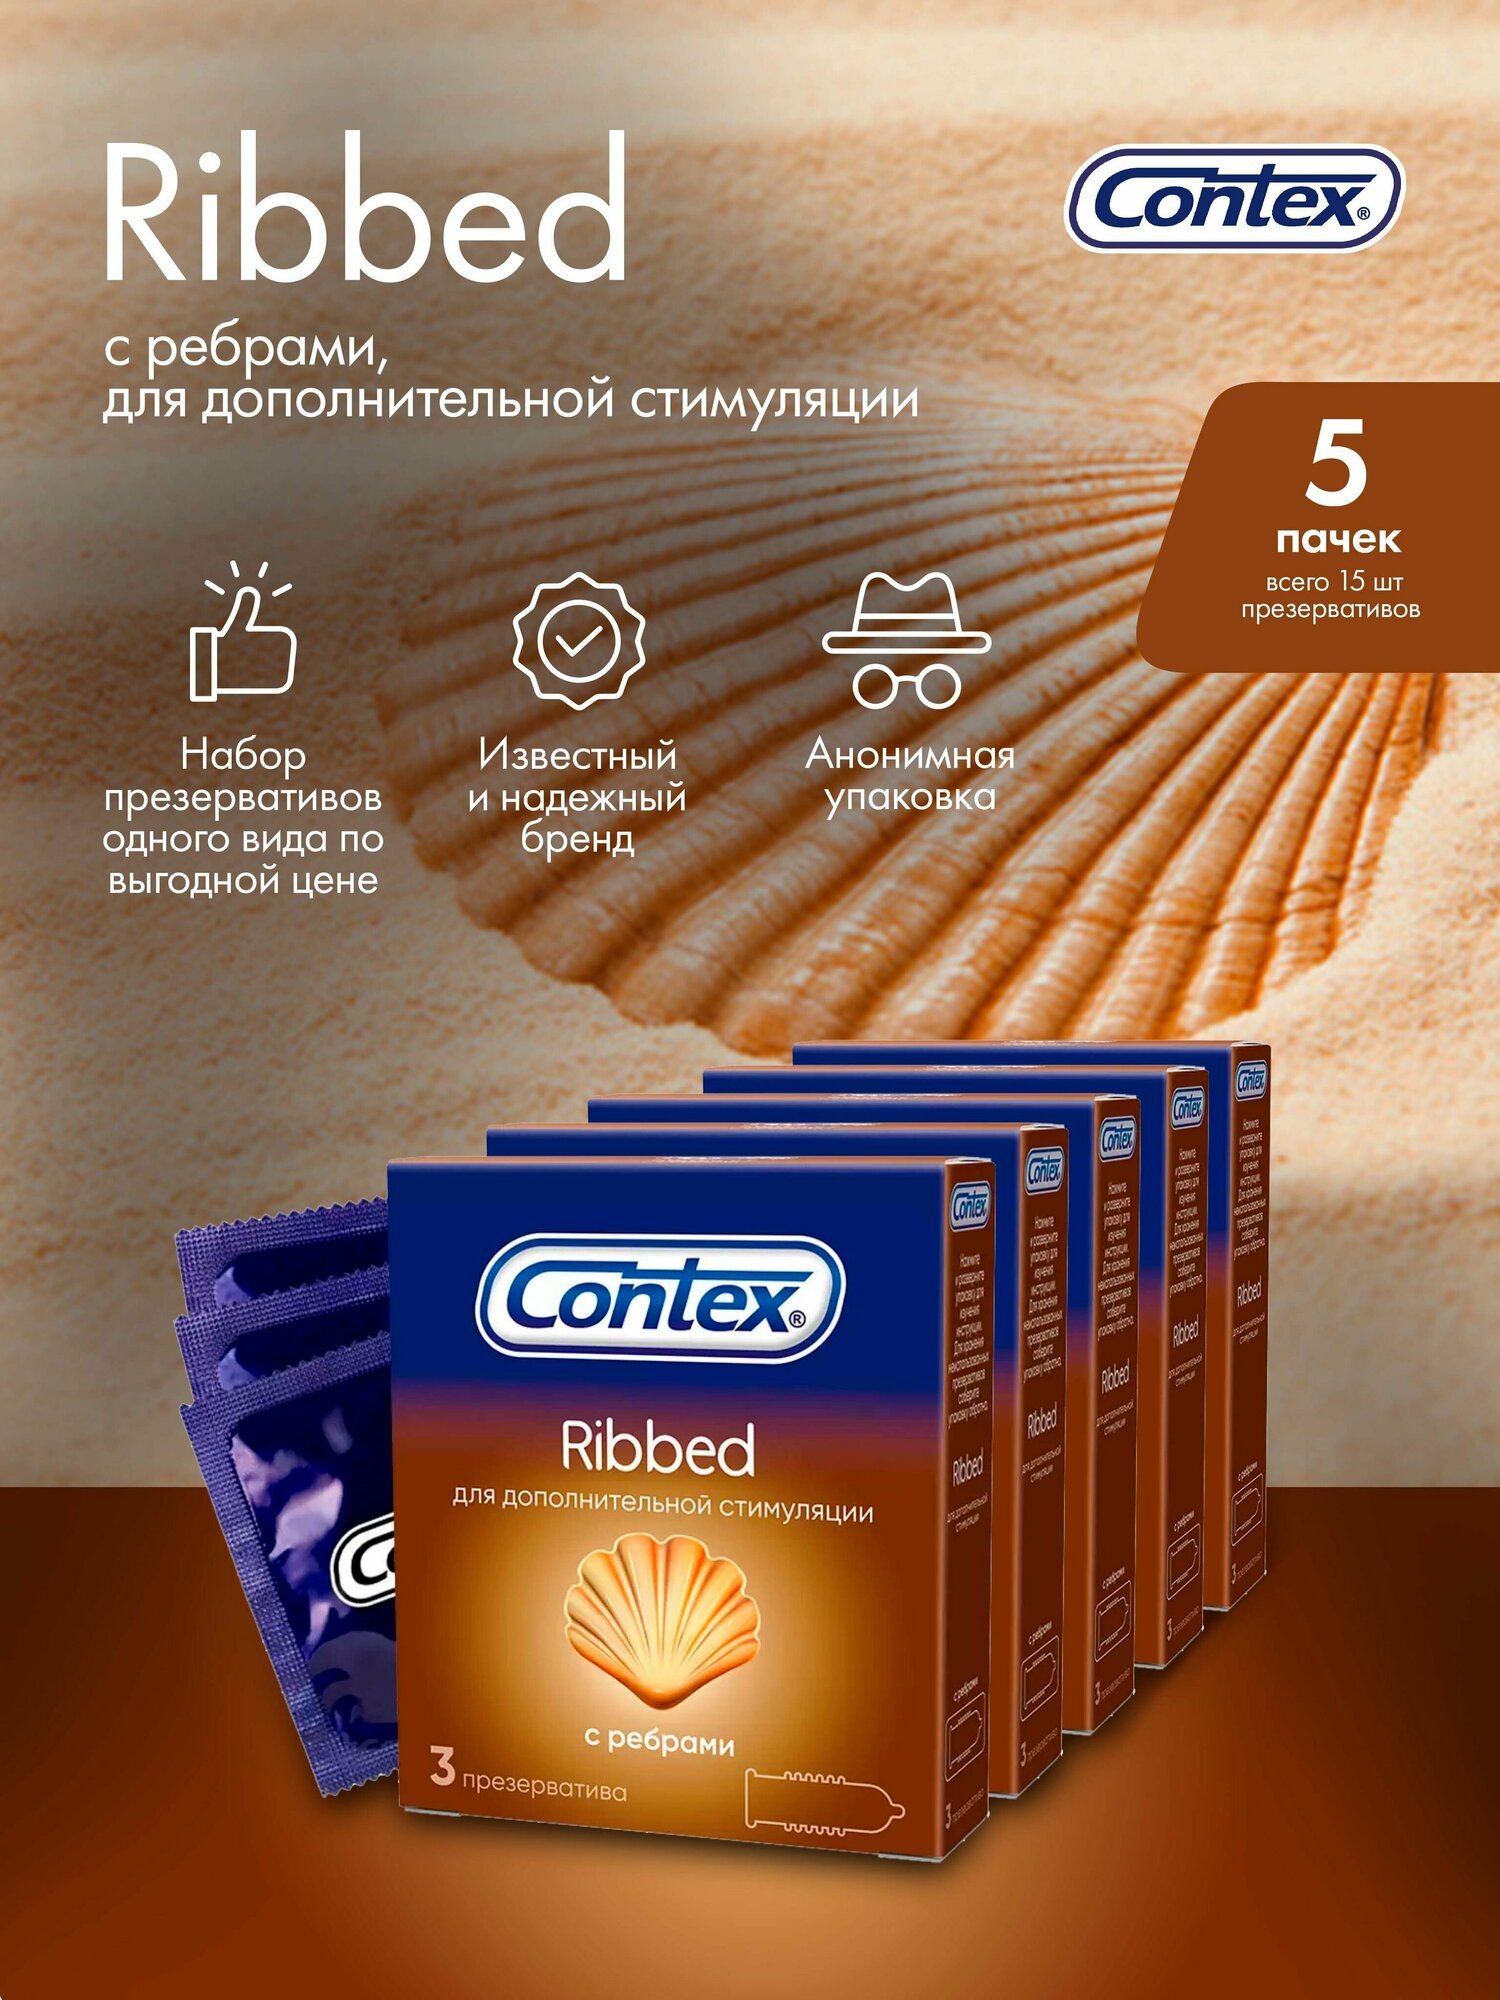 Презервативы Contex Ribbed, 5 x 3 шт (5 упаковок)